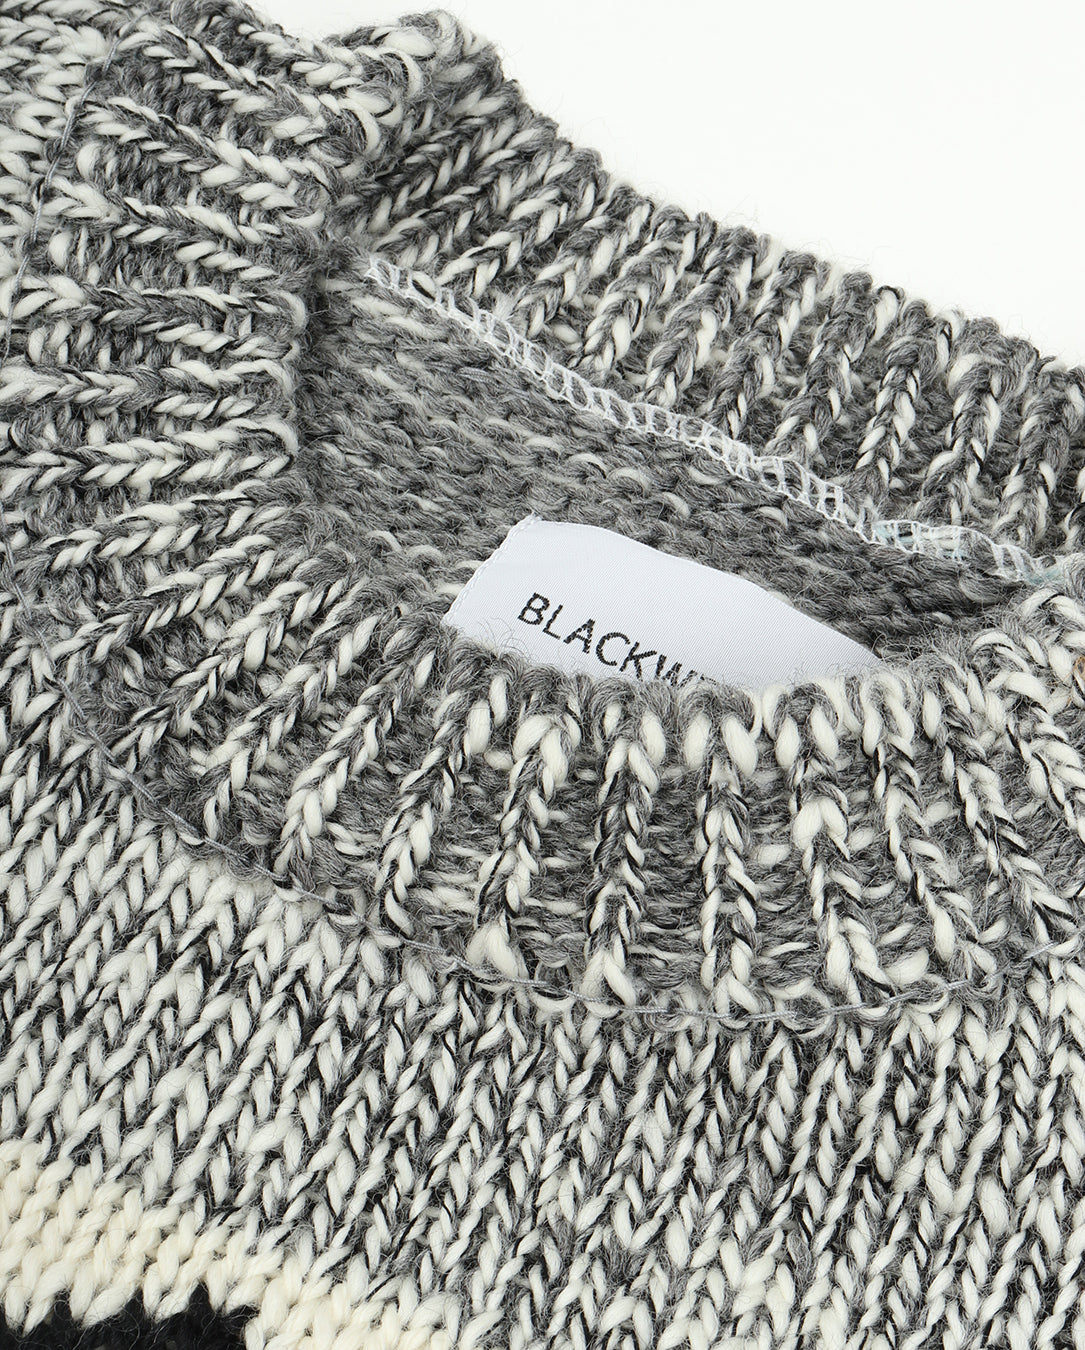 Yin-Yang Sweater grey